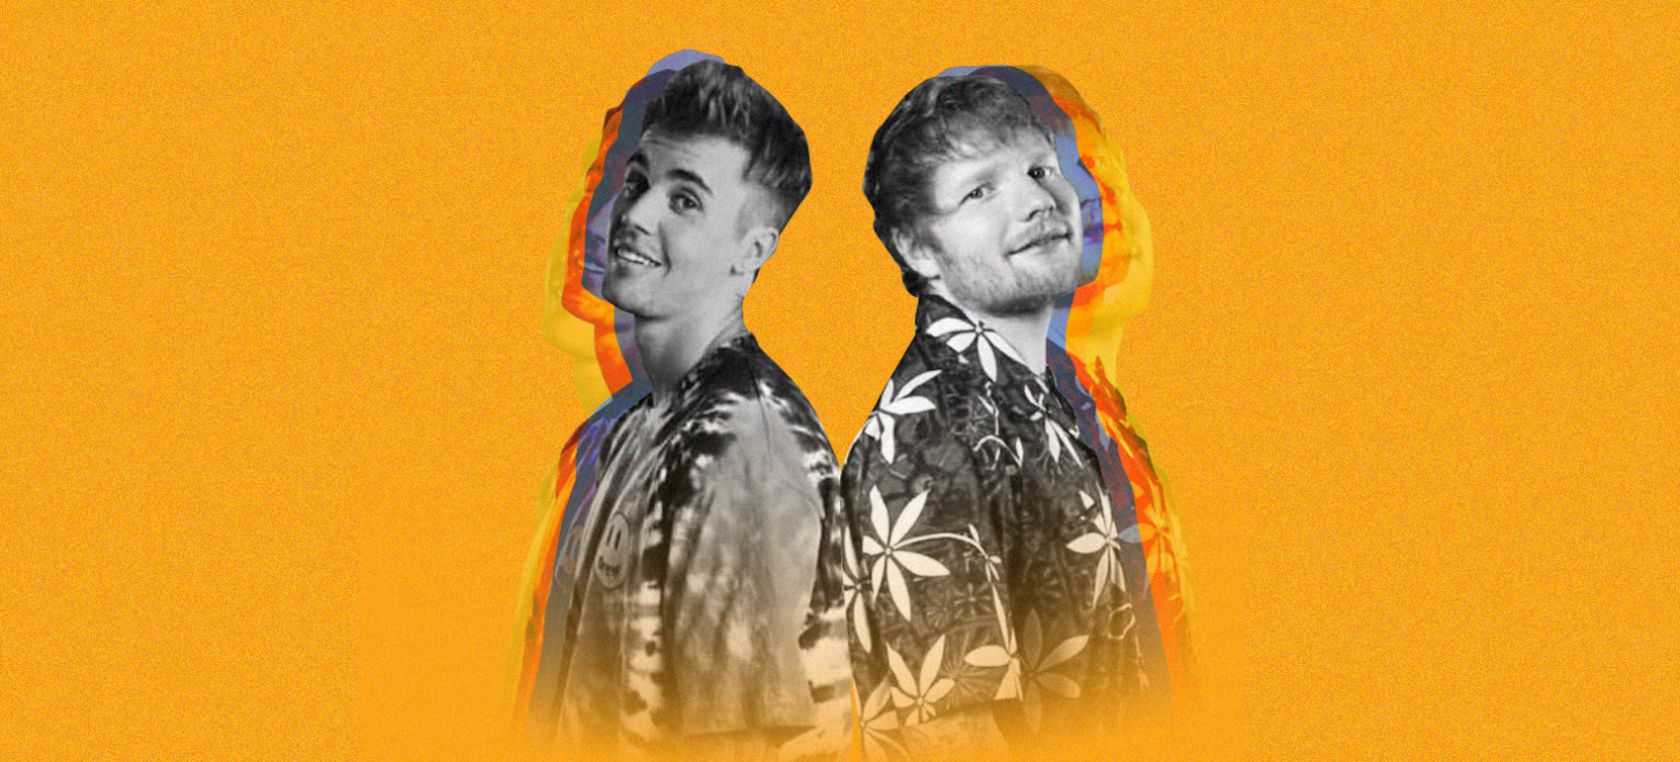 Nº1 histórico para Ed Sheeran y Justin Bieber, que entran directos al primer puesto de la lista